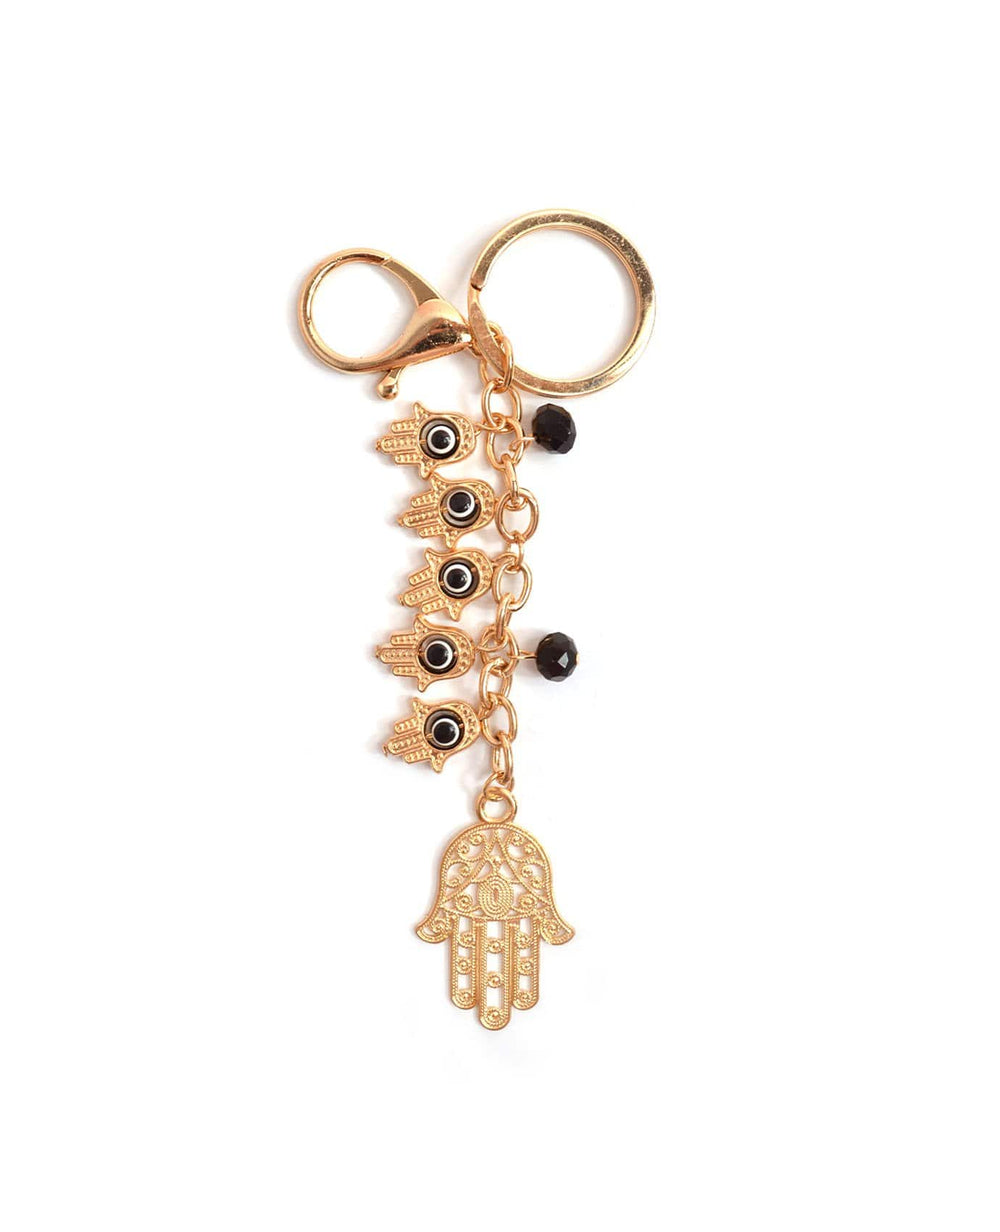 Hamsa Hand Beads Keychain